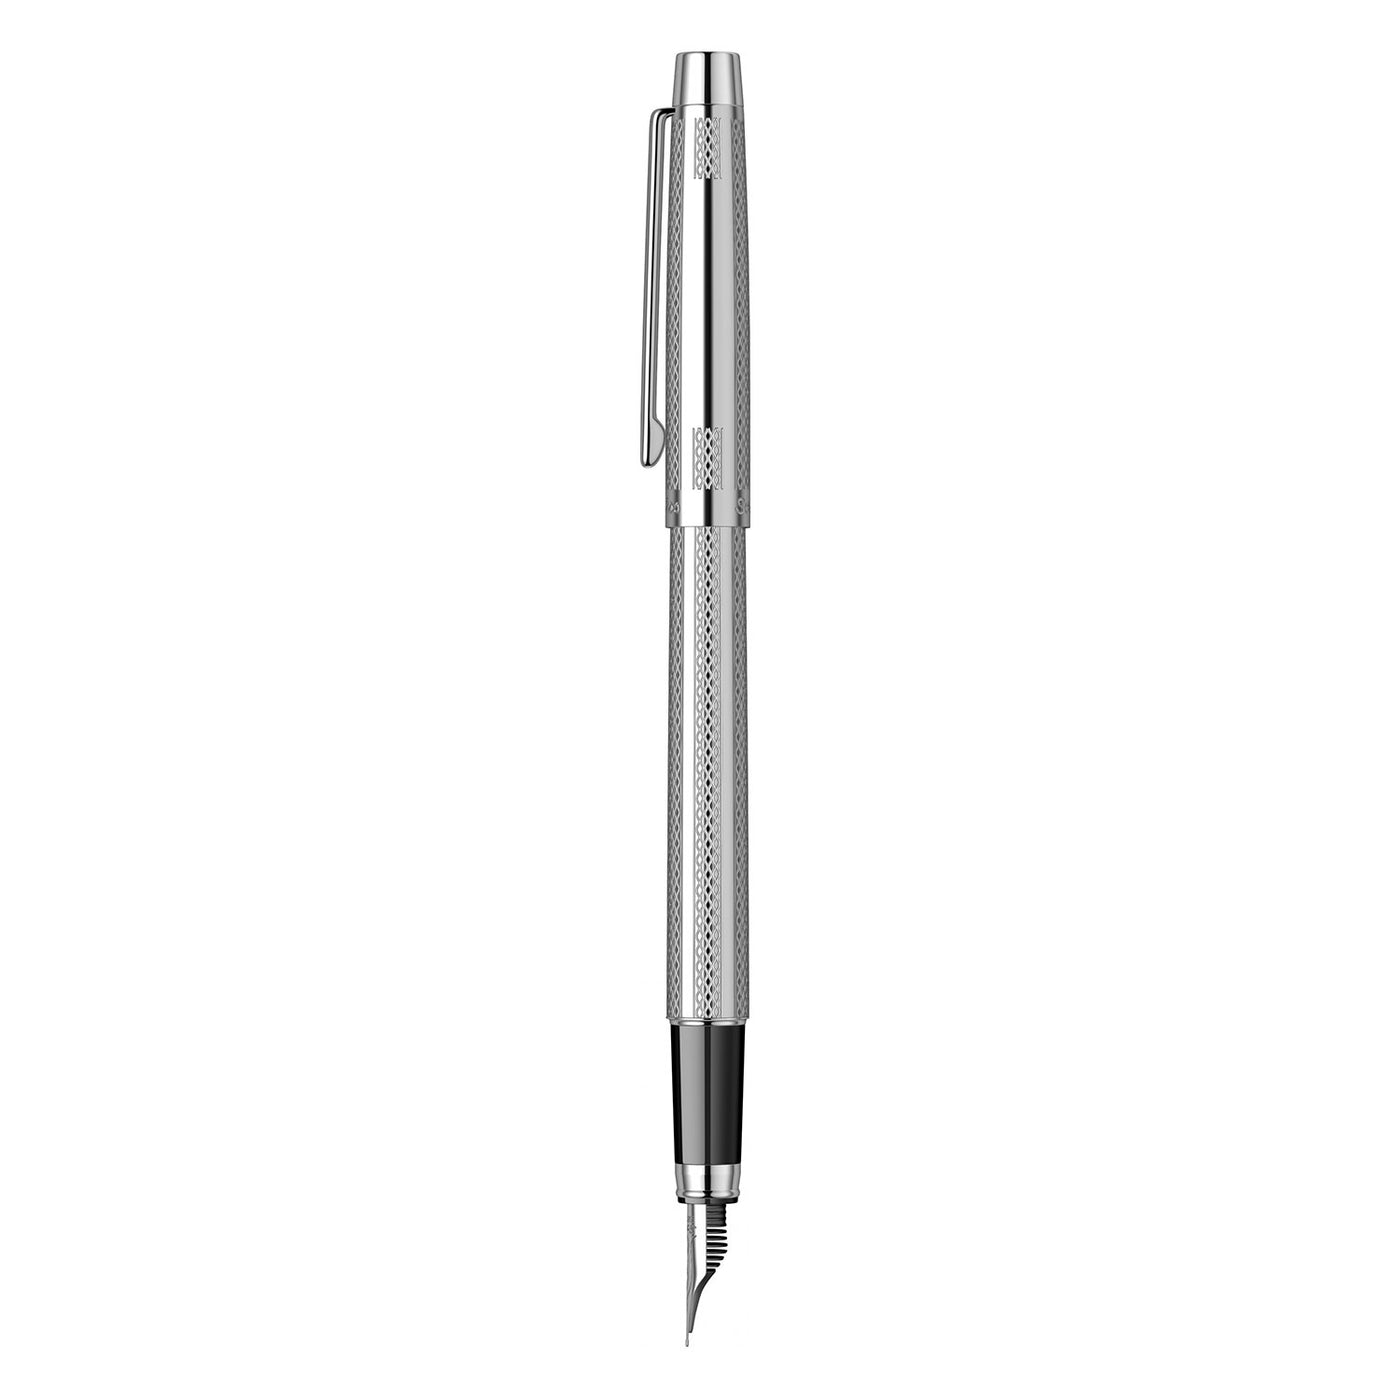 Scrikss Venus 722 Fountain Pen, Chrome / Chrome Trim - Steel Nib 3